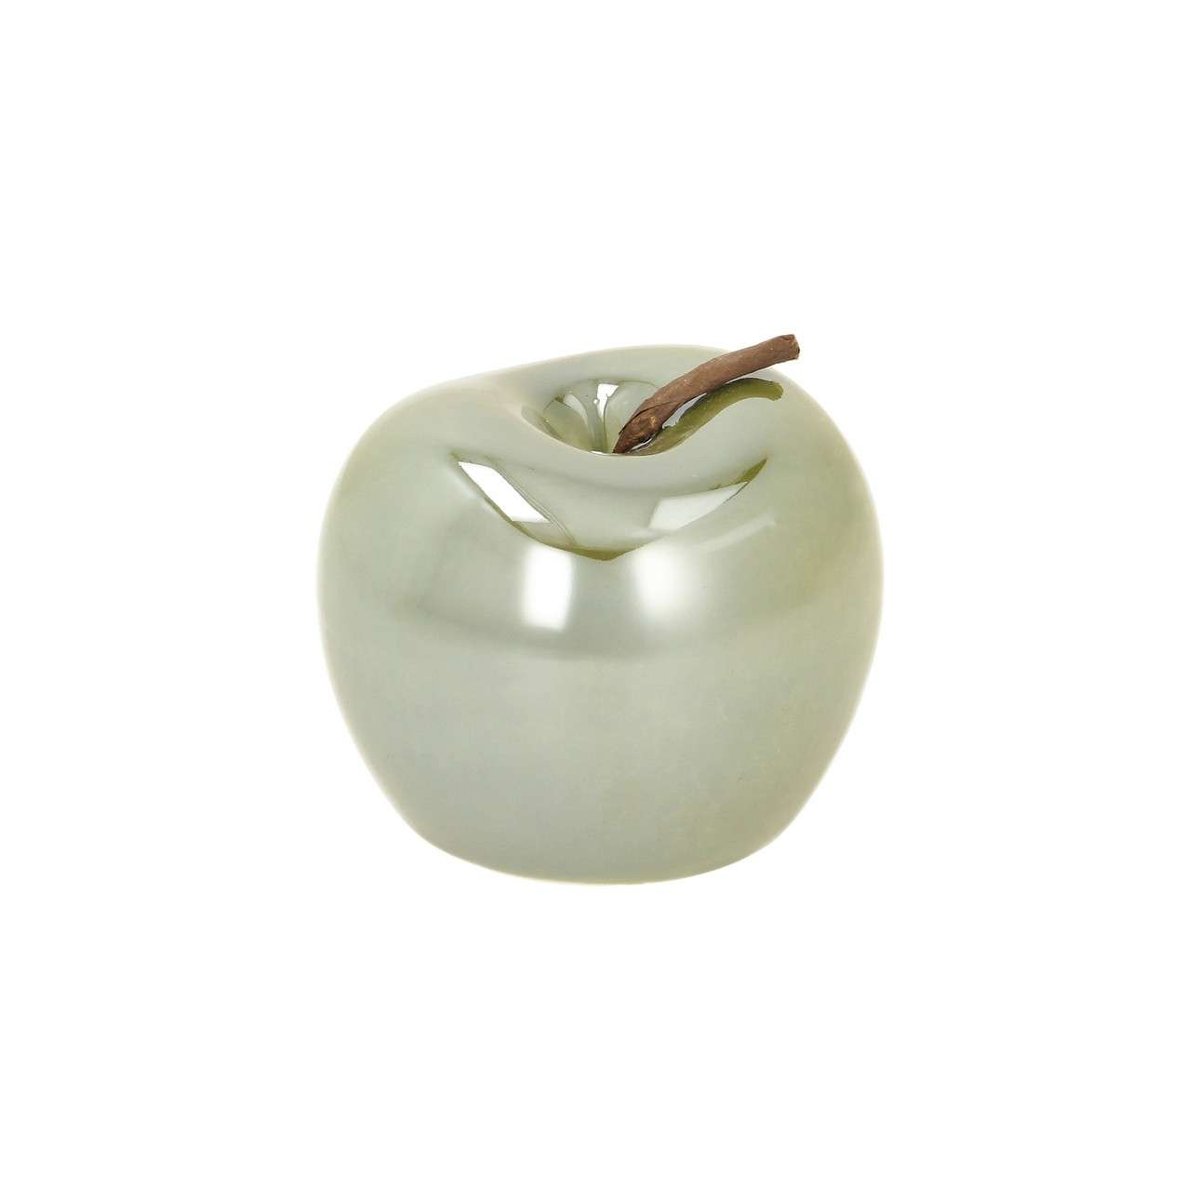 Zdjęcia - Figurka / świecznik Dekoria Dekoracja Apple perly green, 8 x 8 x 6,5 cm 